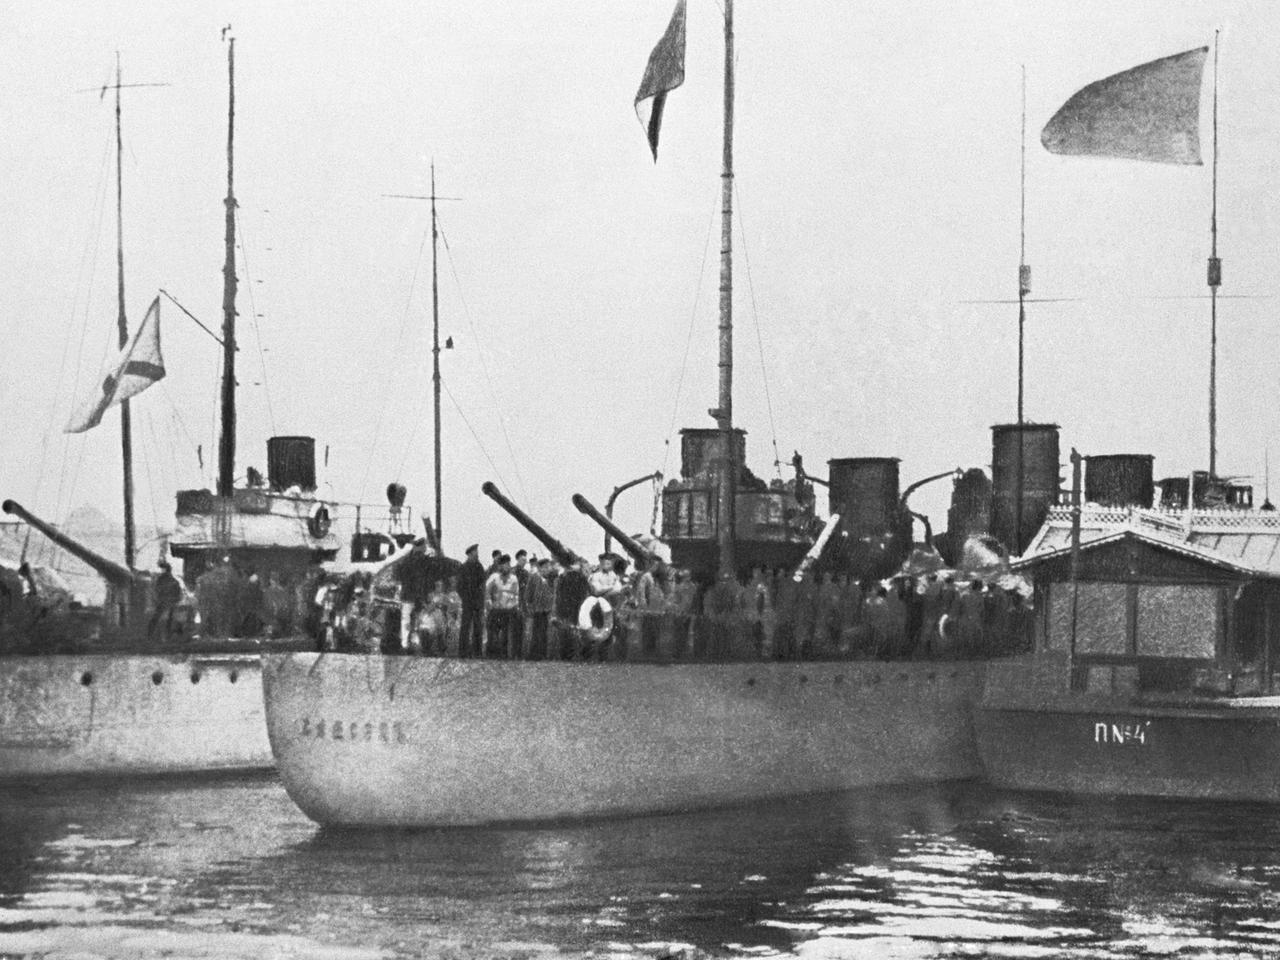 Die Zerstörer Samson, Zabijaka und Metki kommen aus Helsiniki um Befehle des militärischen Revolutionskommandos auszuführen.